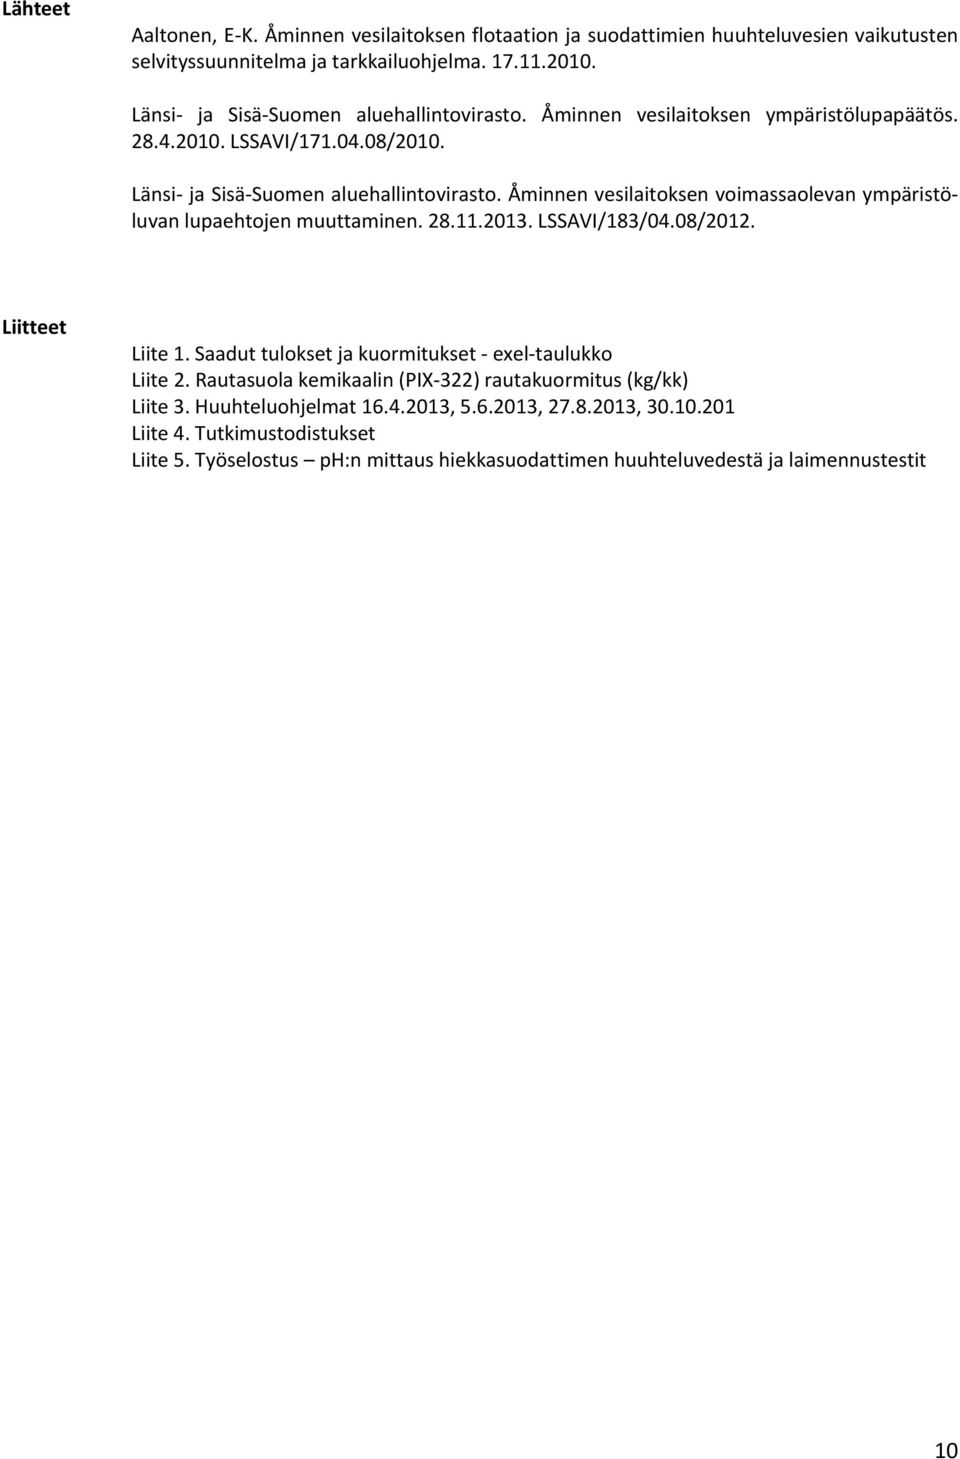 Åminnen vesilaitoksen voimassaolevan ympäristöluvan lupaehtojen muuttaminen. 28.11.2013. LSSAVI/183/04.08/2012. Liitteet Liite 1.